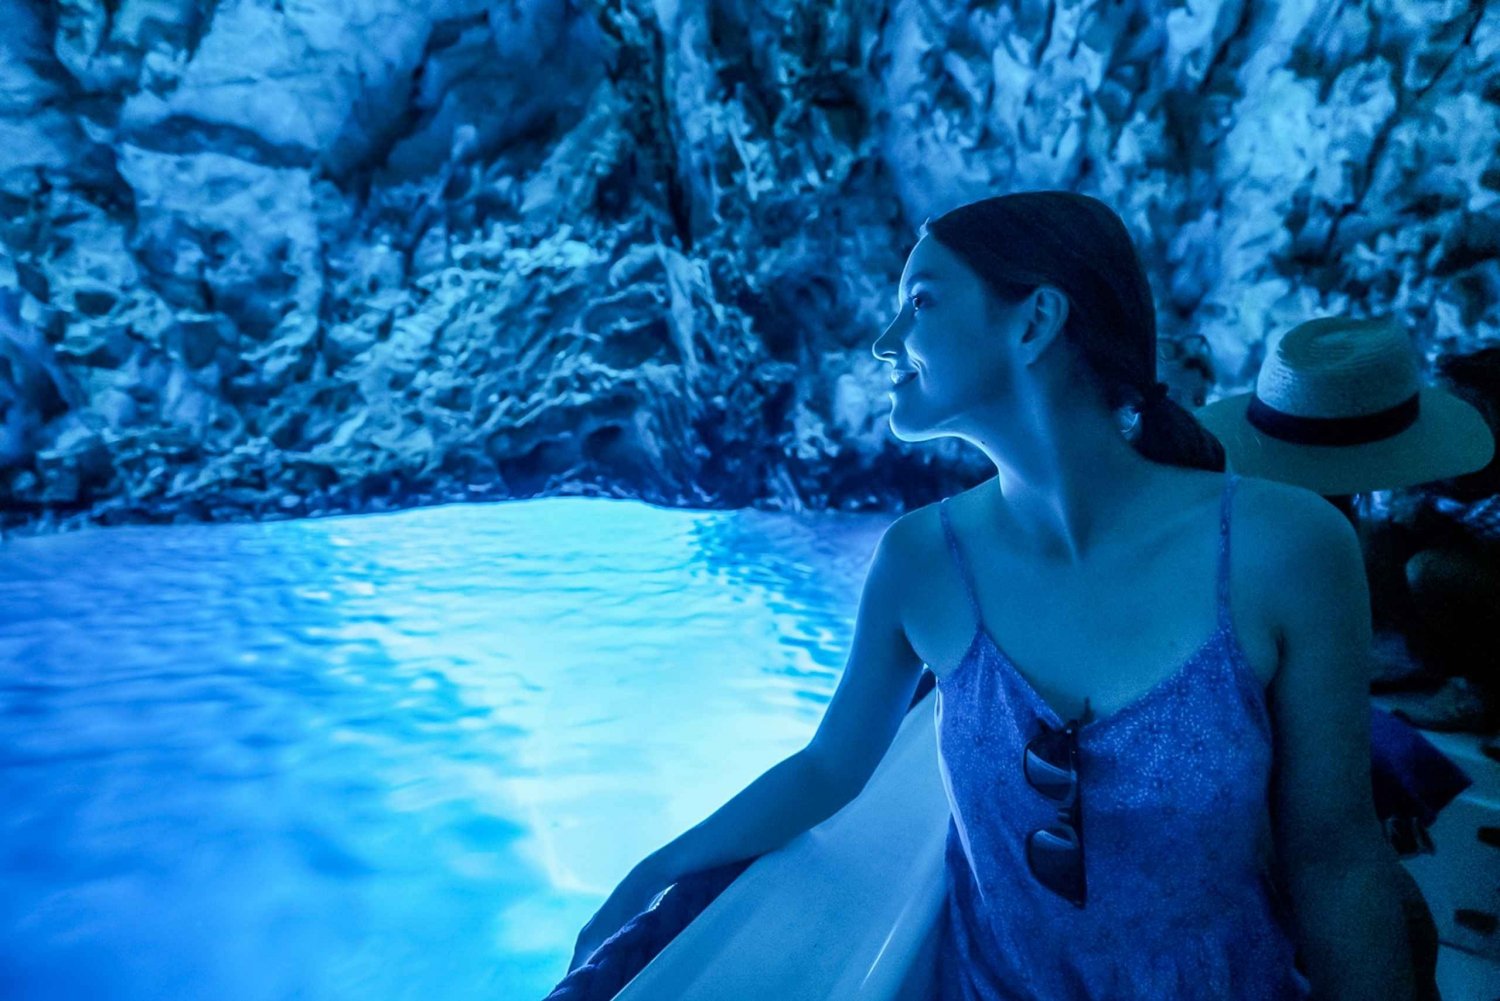 Split/Trogir: Blå grotte, Mamma Mia og tur til Hvar 5 øyer